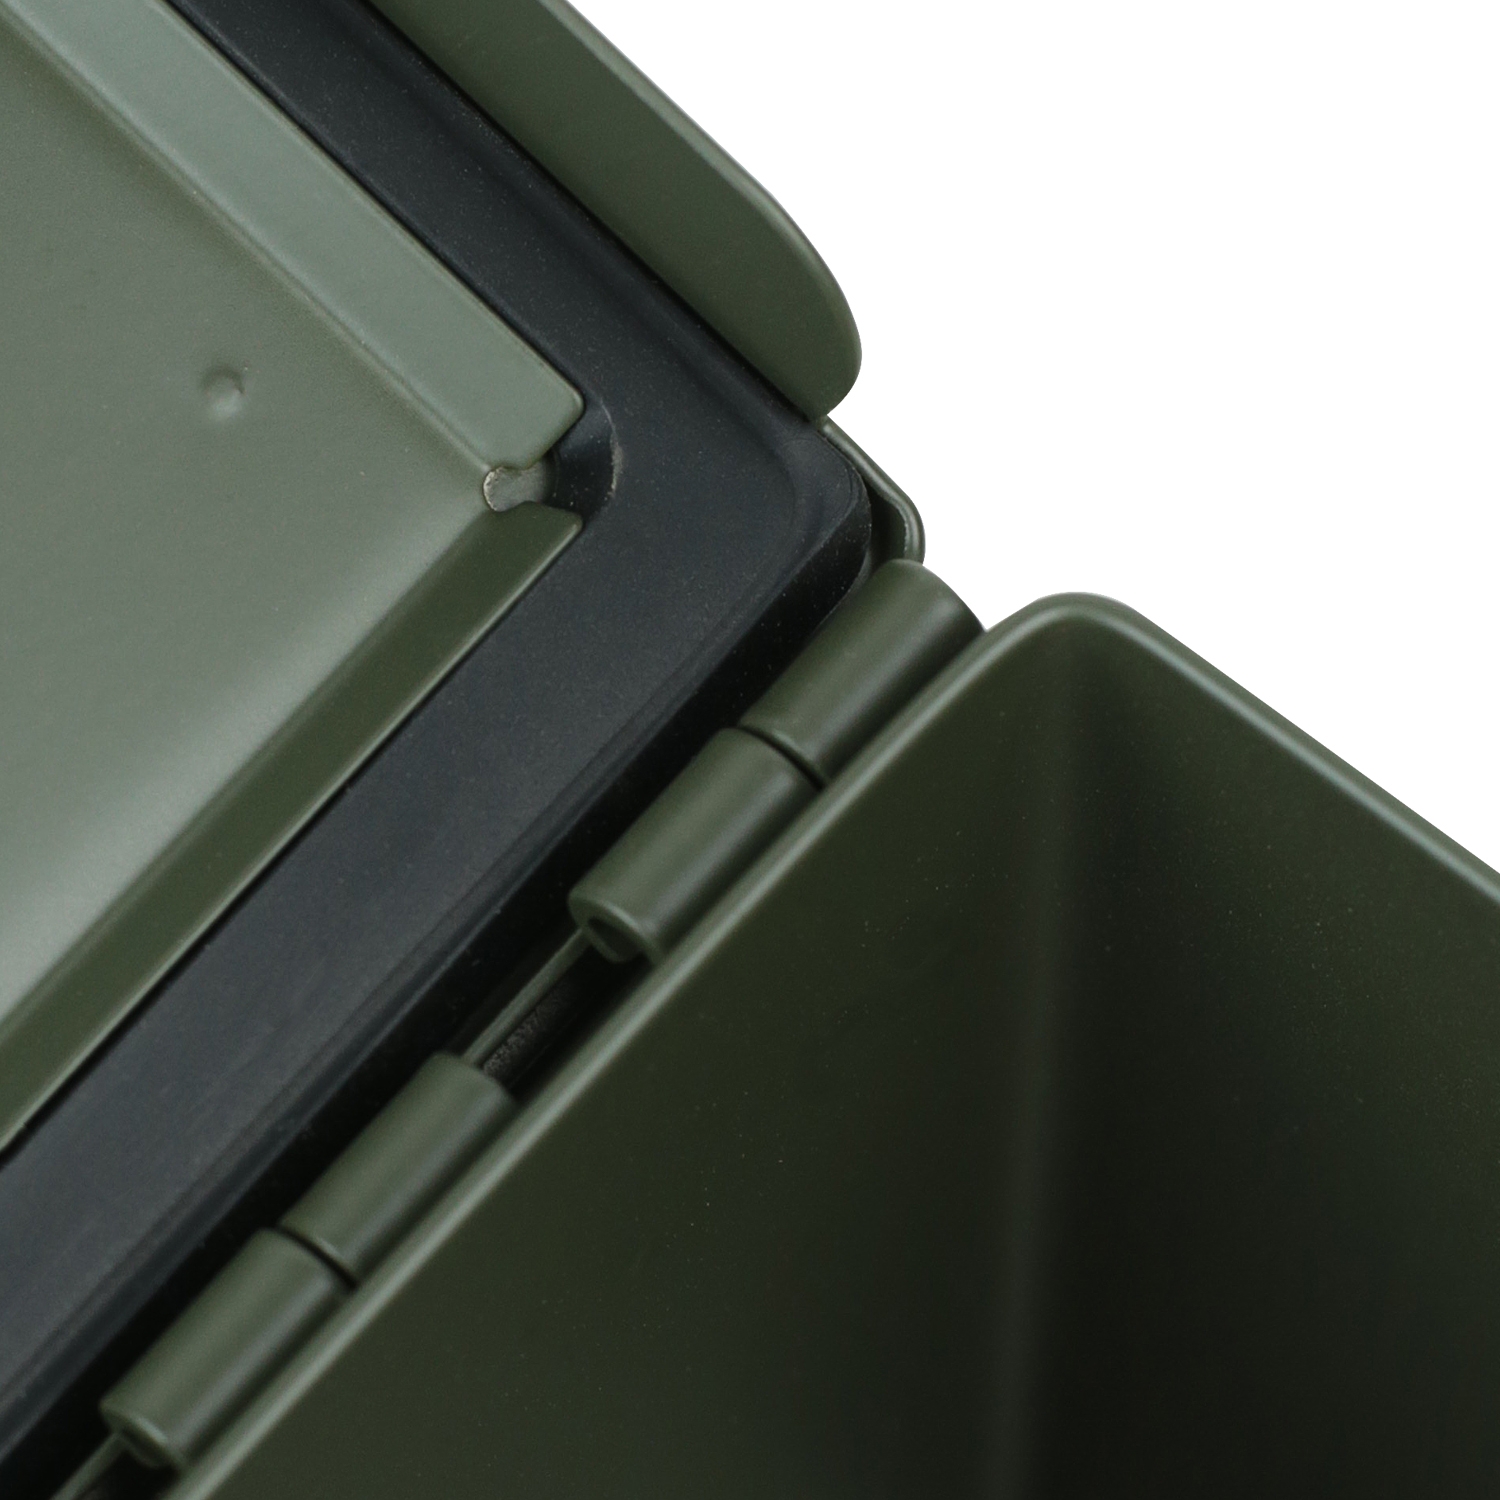 US Ammo Box als Munitionskoffer aus Metall von HMF mit den Maßen 27.5 x 17.5 x 9.5 cm in grün